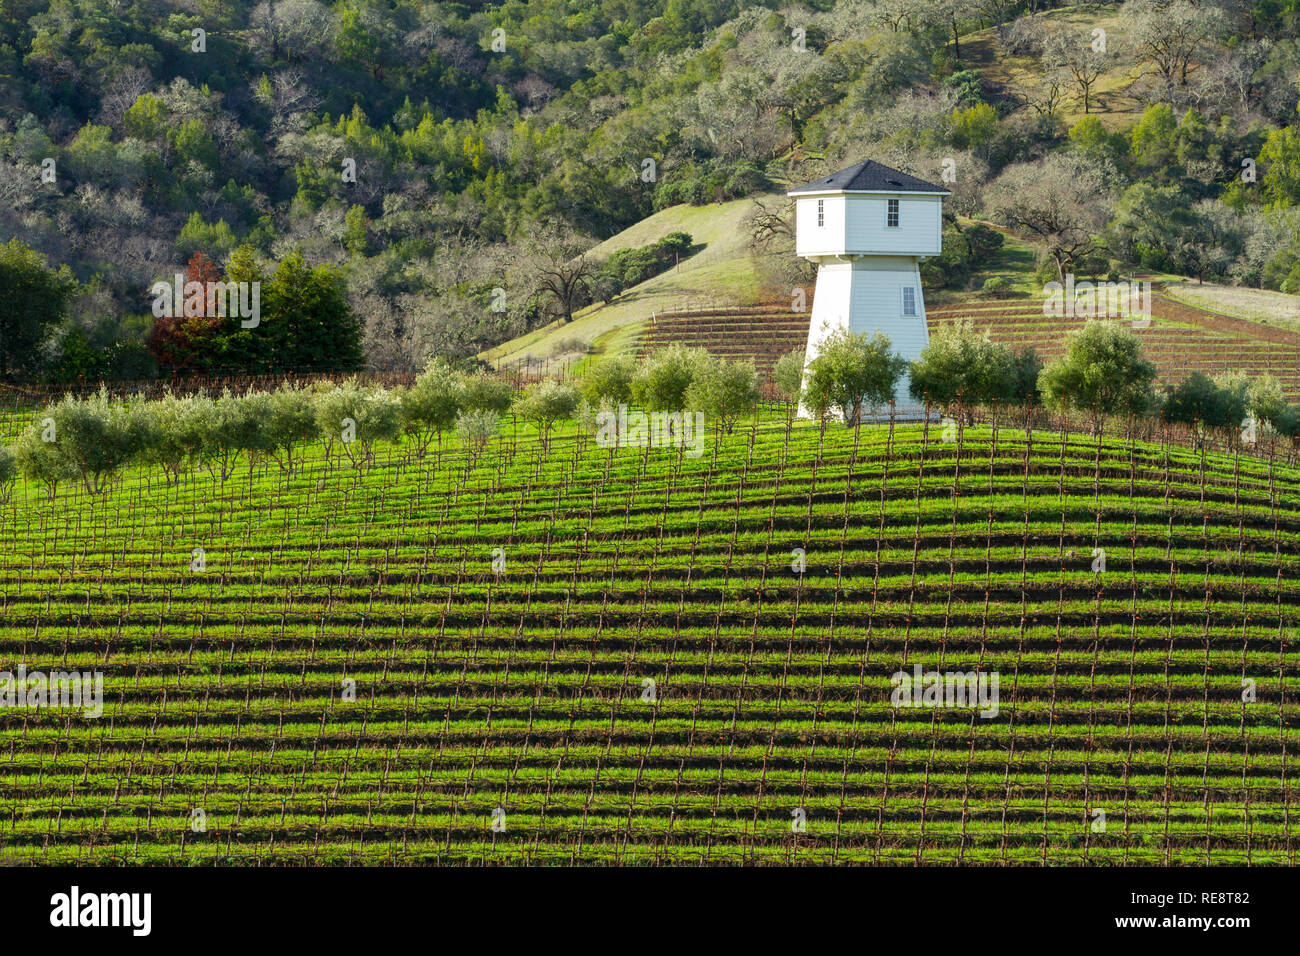 Wasser und Wein - Wasser turm über Weinberg Zeilen. Geyserville, Kalifornien, USA Stockfoto